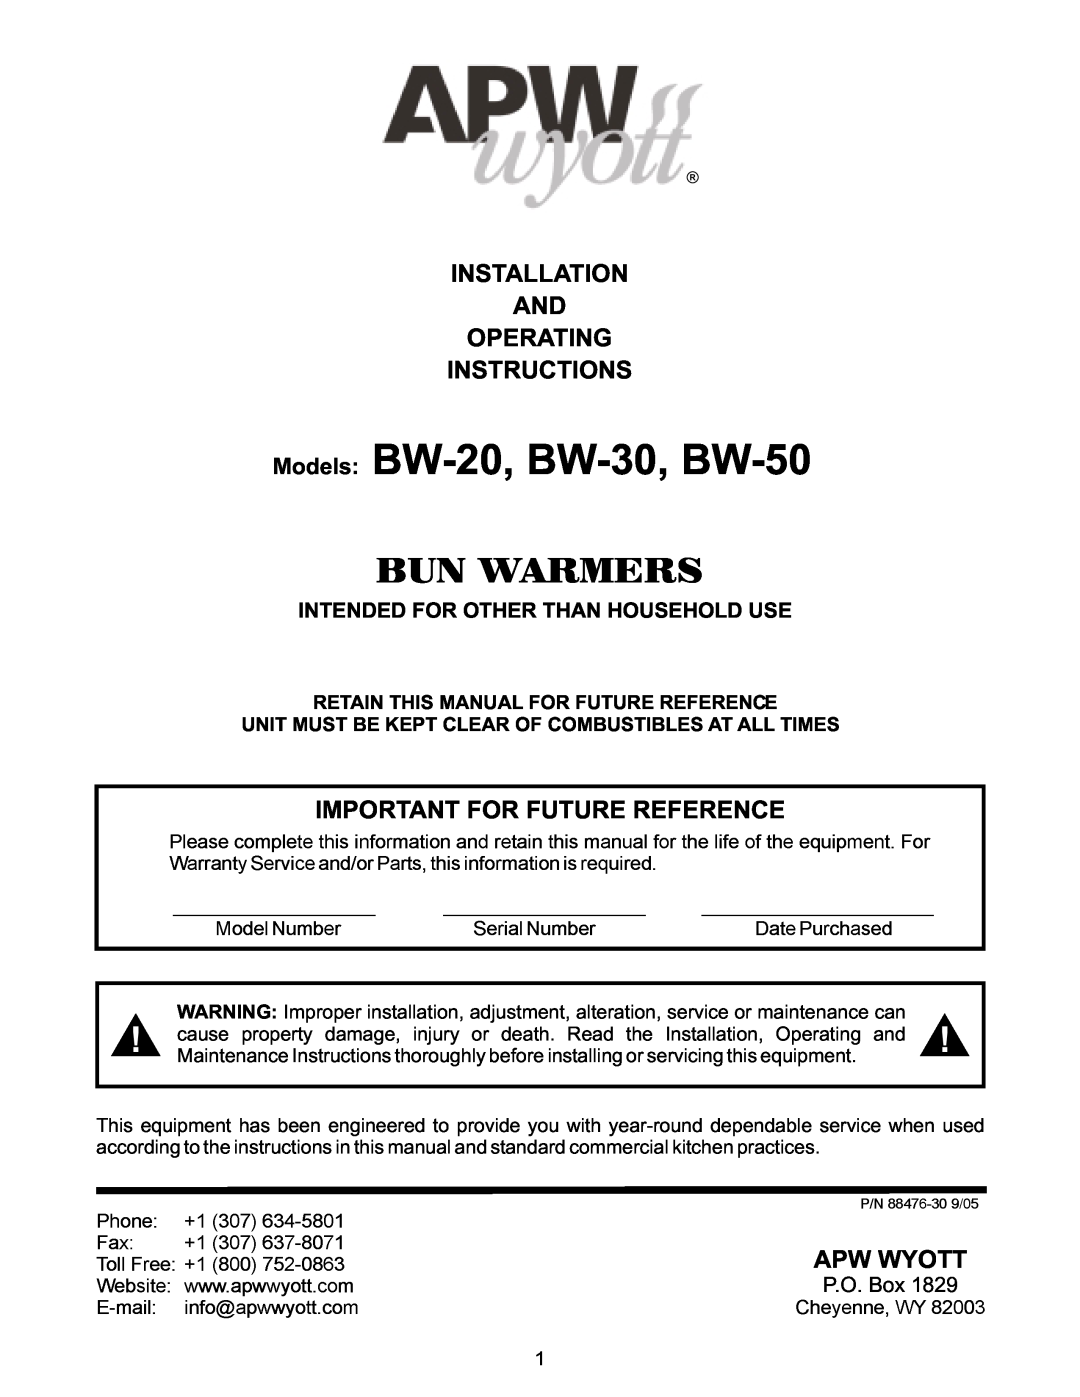 APW Wyott BW-30 operating instructions Installation And Operating Instructions, Intended For Other Than Household Use 